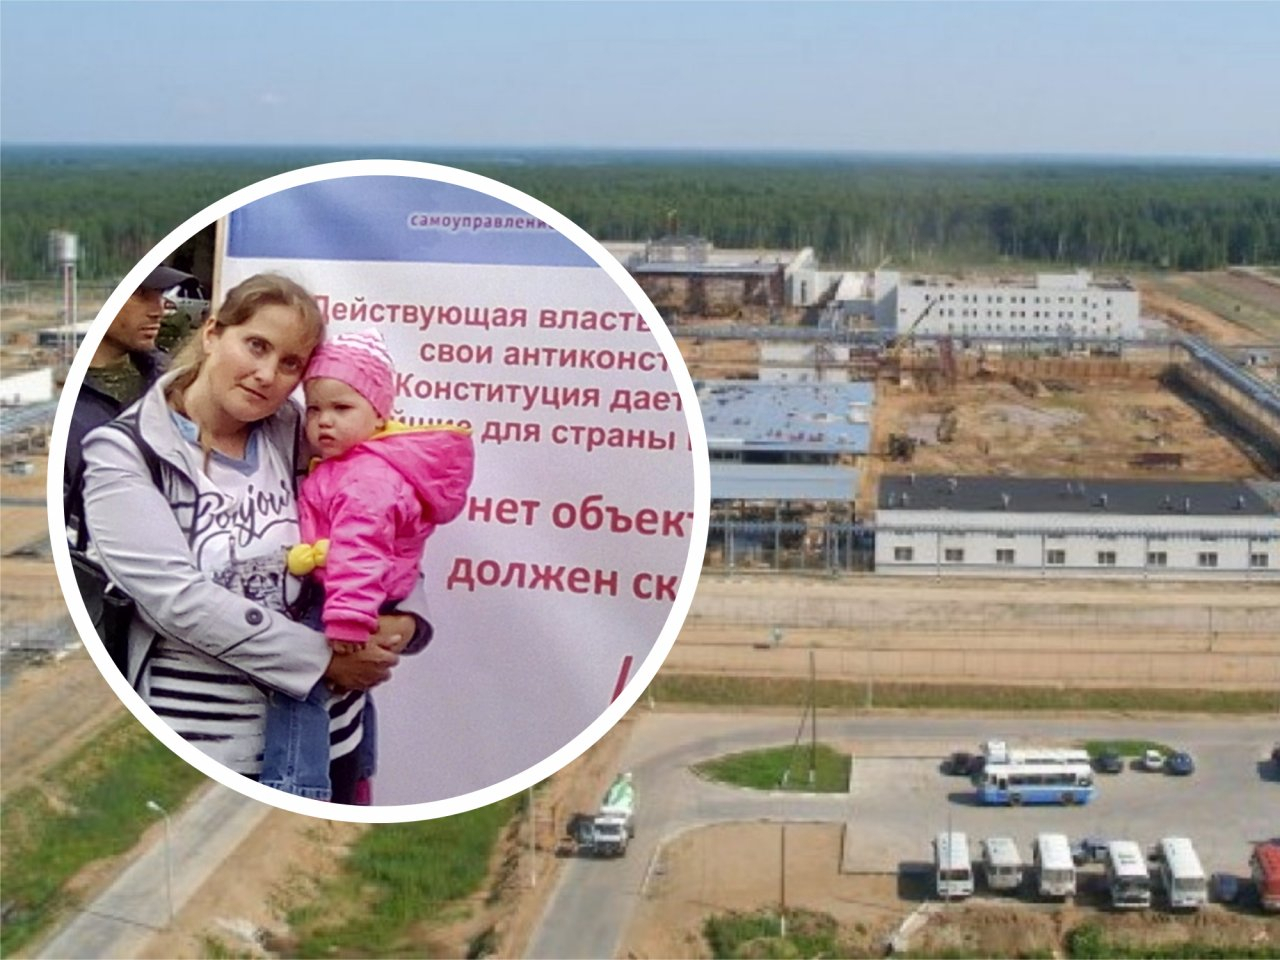 "Младшая дочь родилась с диагнозом": жительница Мирного о работе на заводе по уничтожению химии